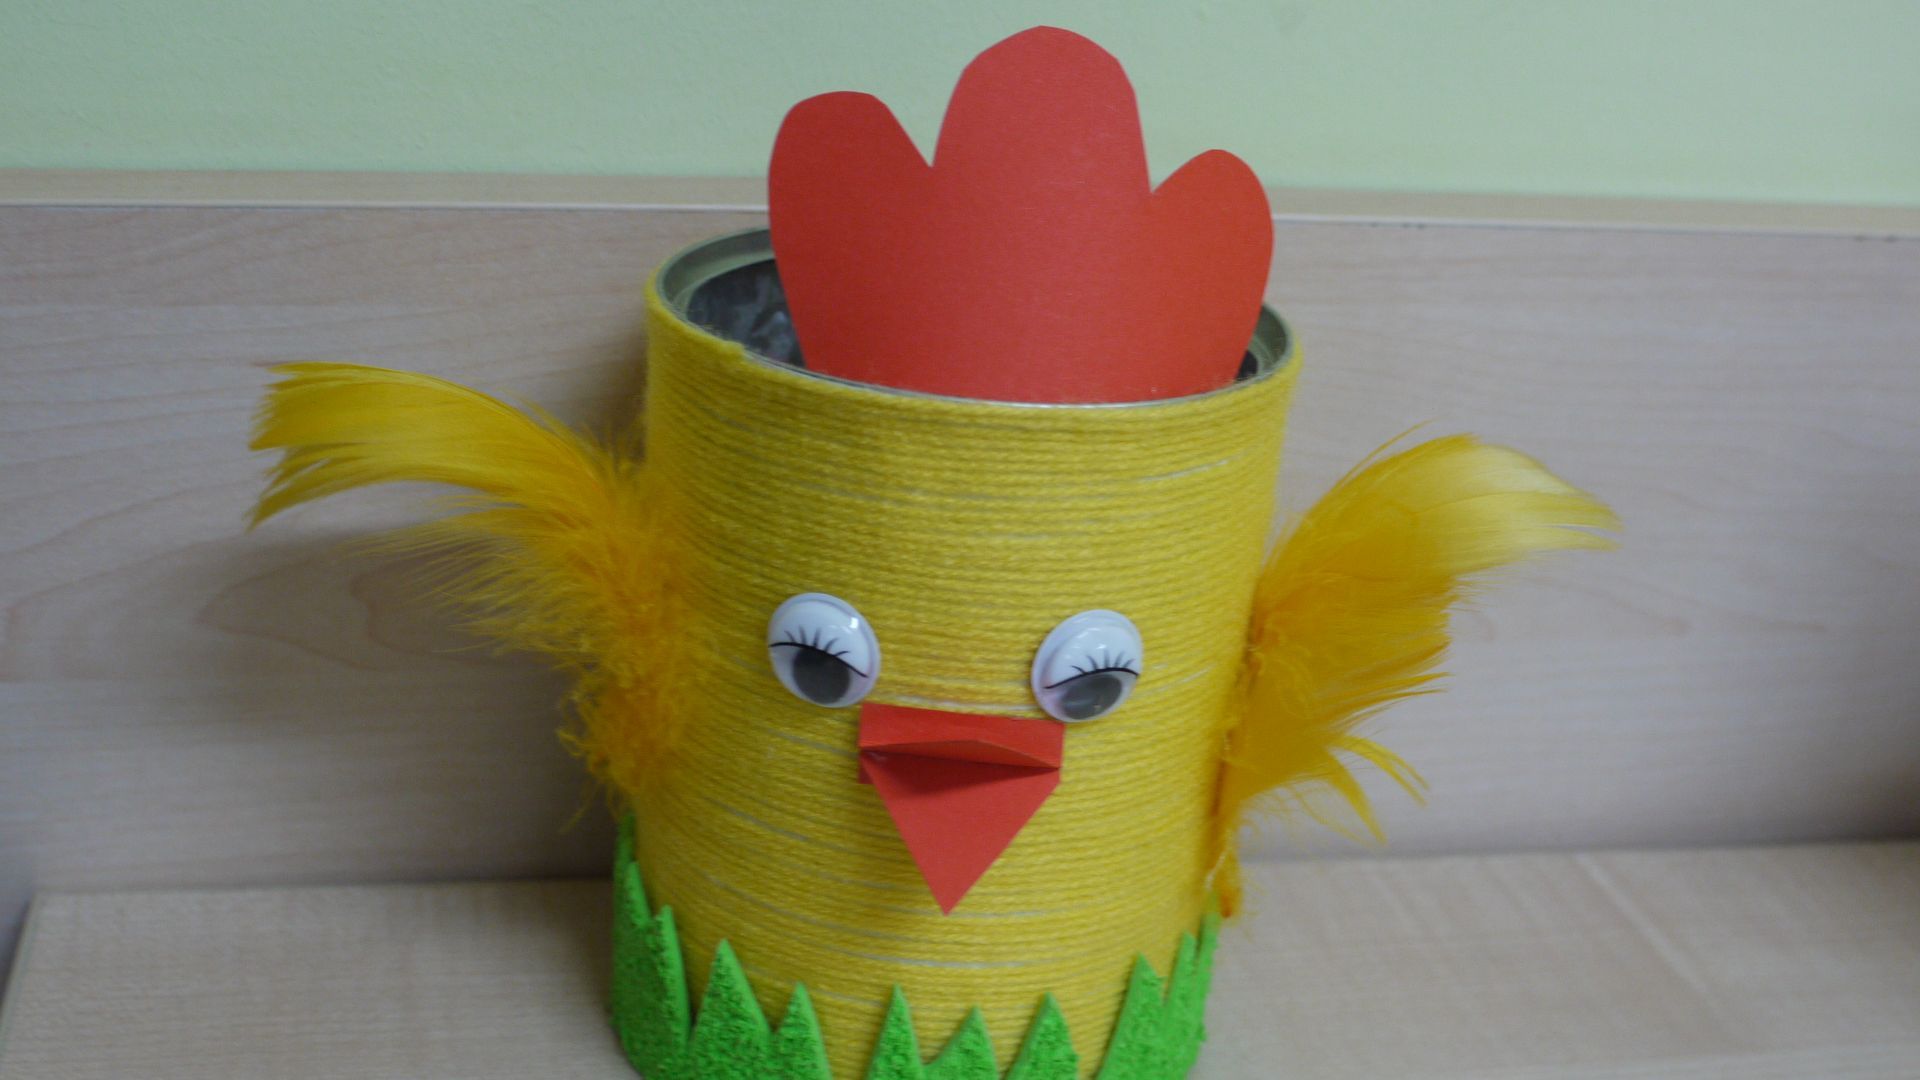 Kurczak wielkanocny - pojemnik dekoracyjny z puszki aluminiowej i żółtej włóczki. Autor: Justyna K.